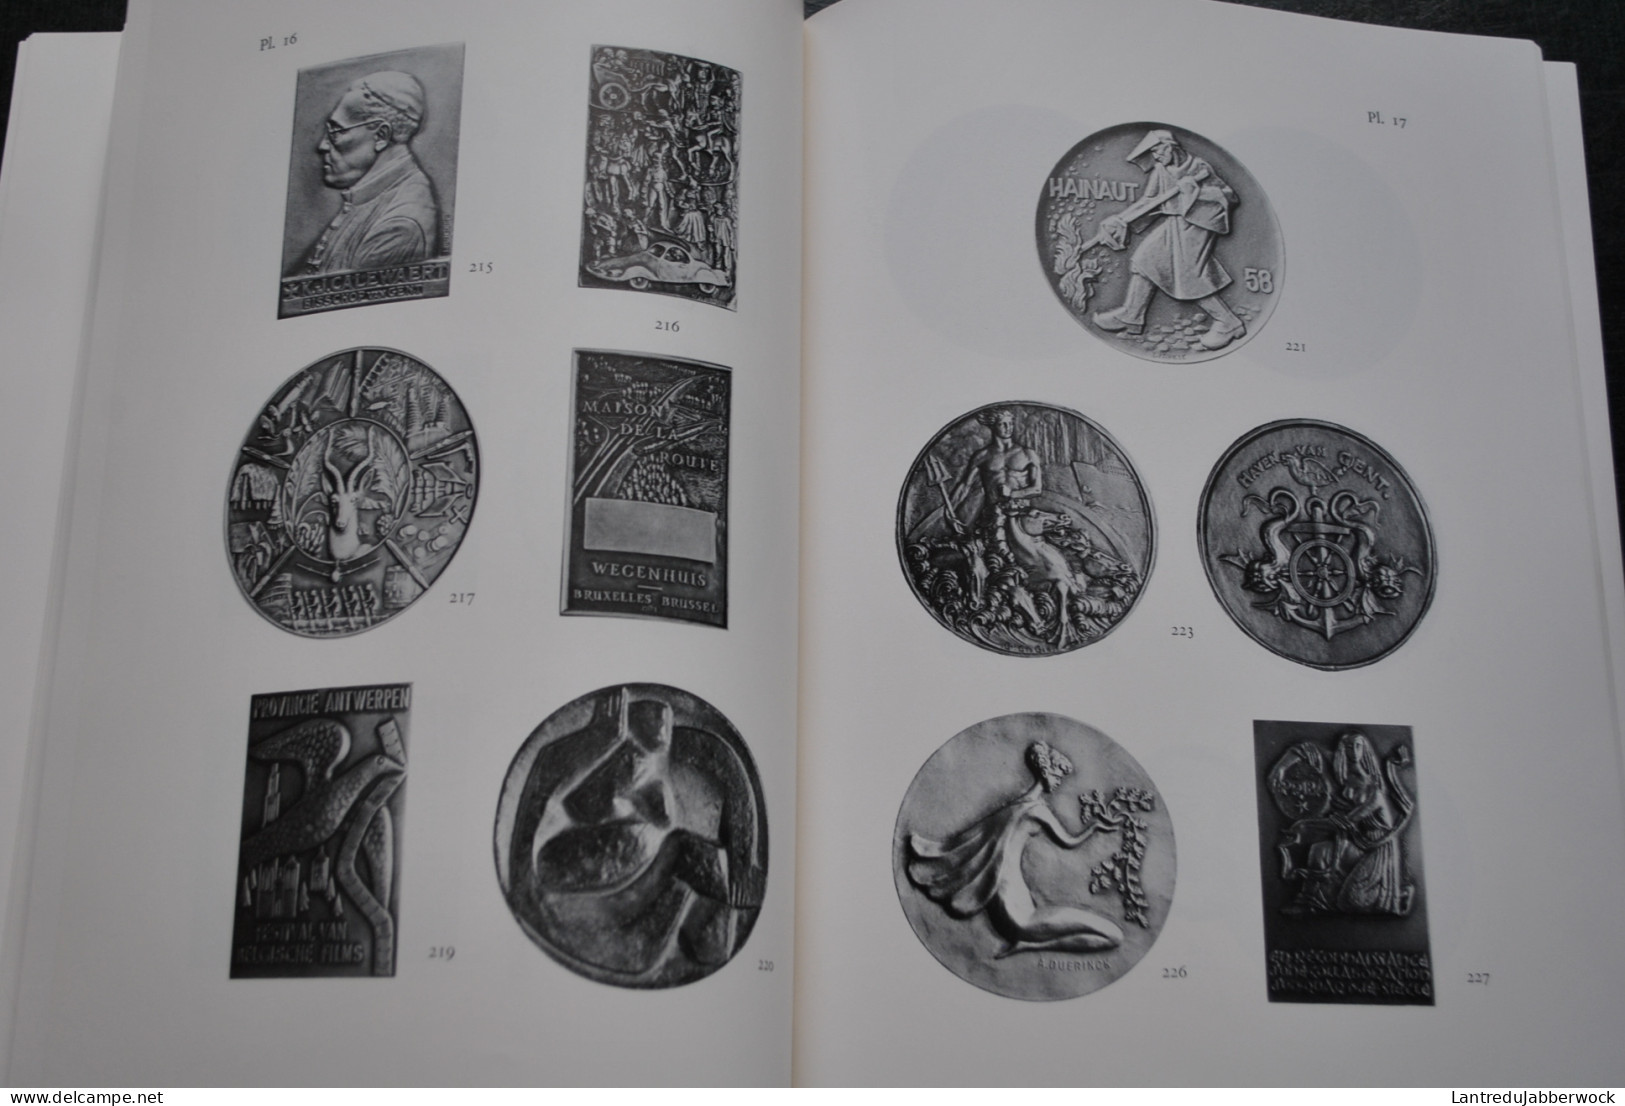 Jan Lippens Van Keymeulen La médaille en Belgique de 1951 à 1976 Catalogue 70 planches de reproductions